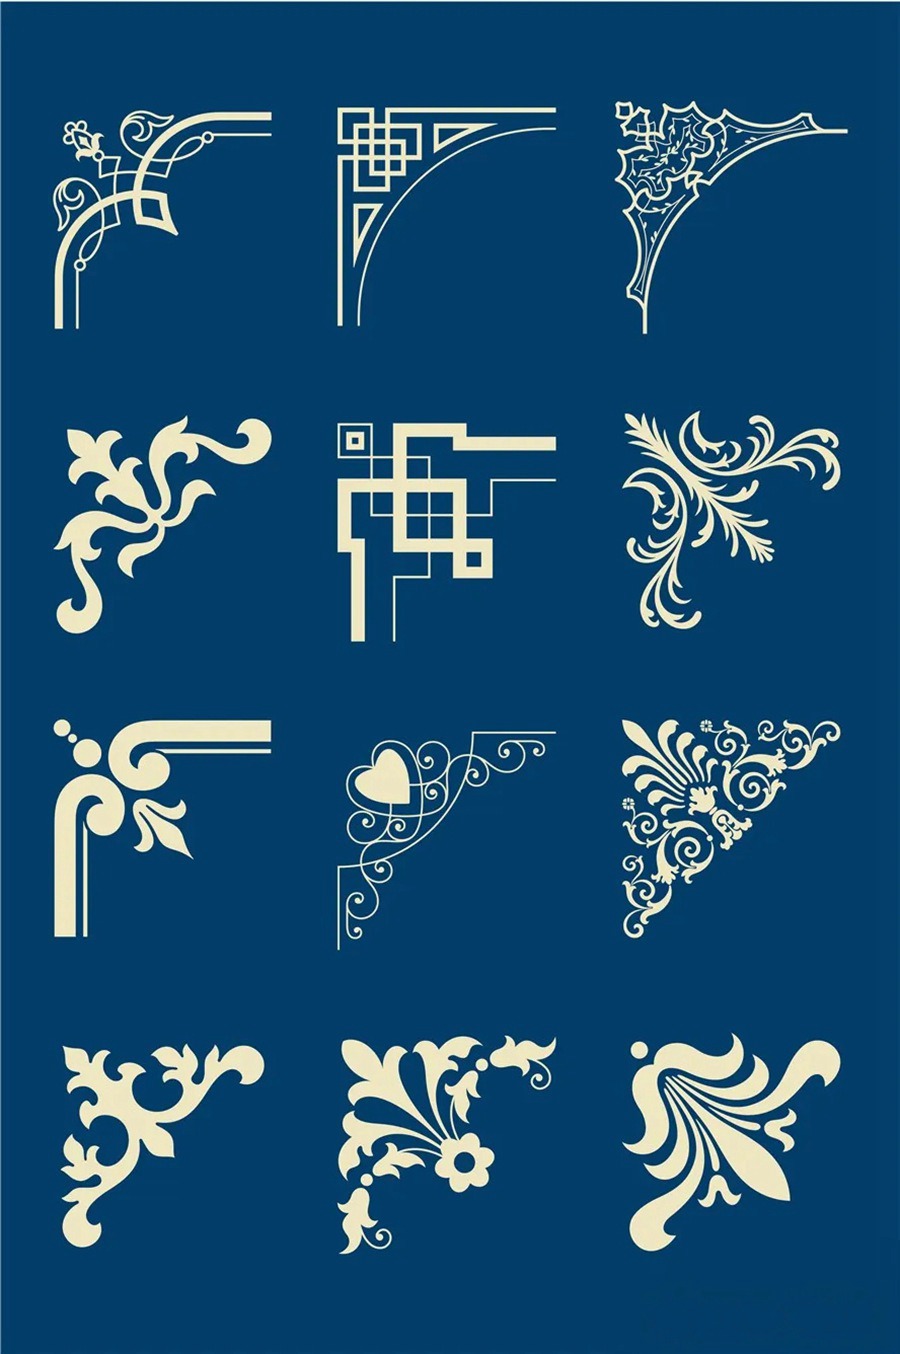 中国风传统古典青花瓷图案花纹图形纹样AI矢量模板花纹设计素材 图片素材 第11张